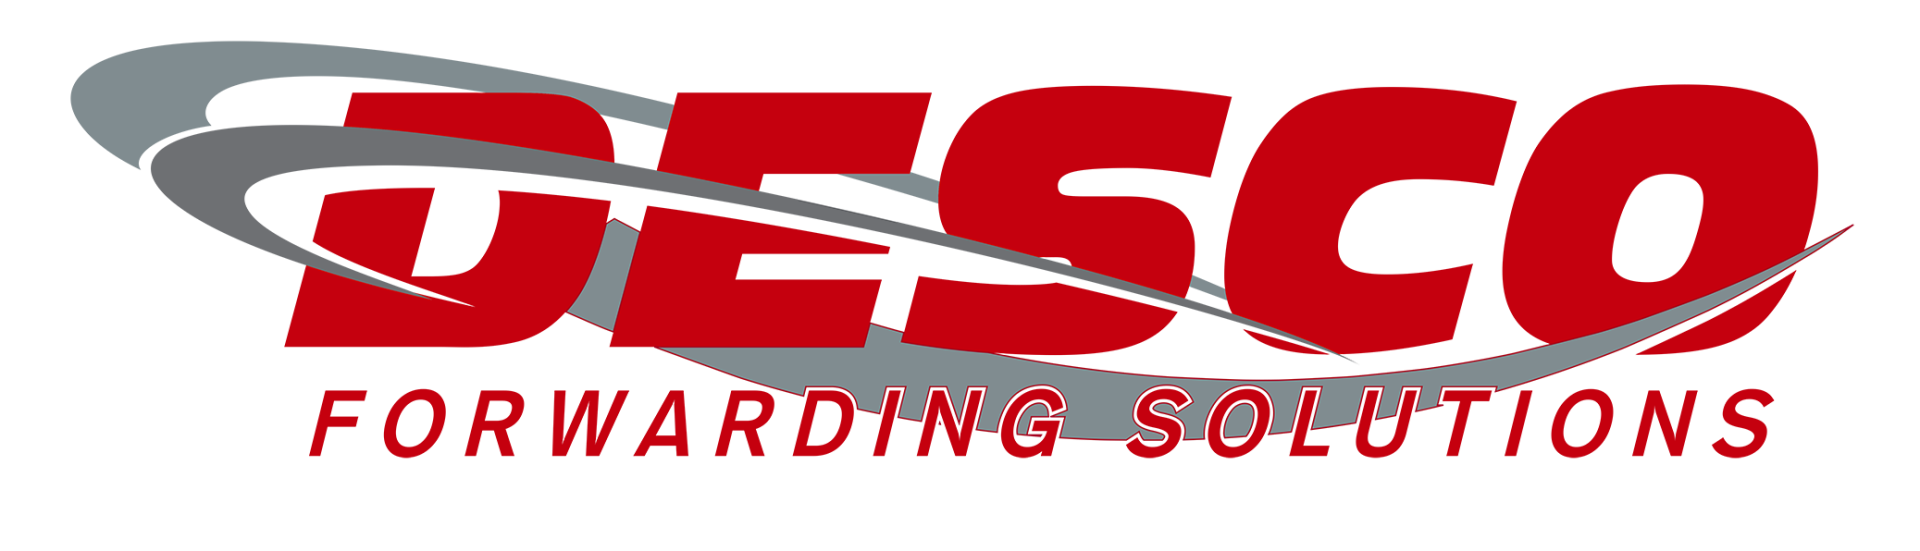 Desco Forwarding Solutions Logo